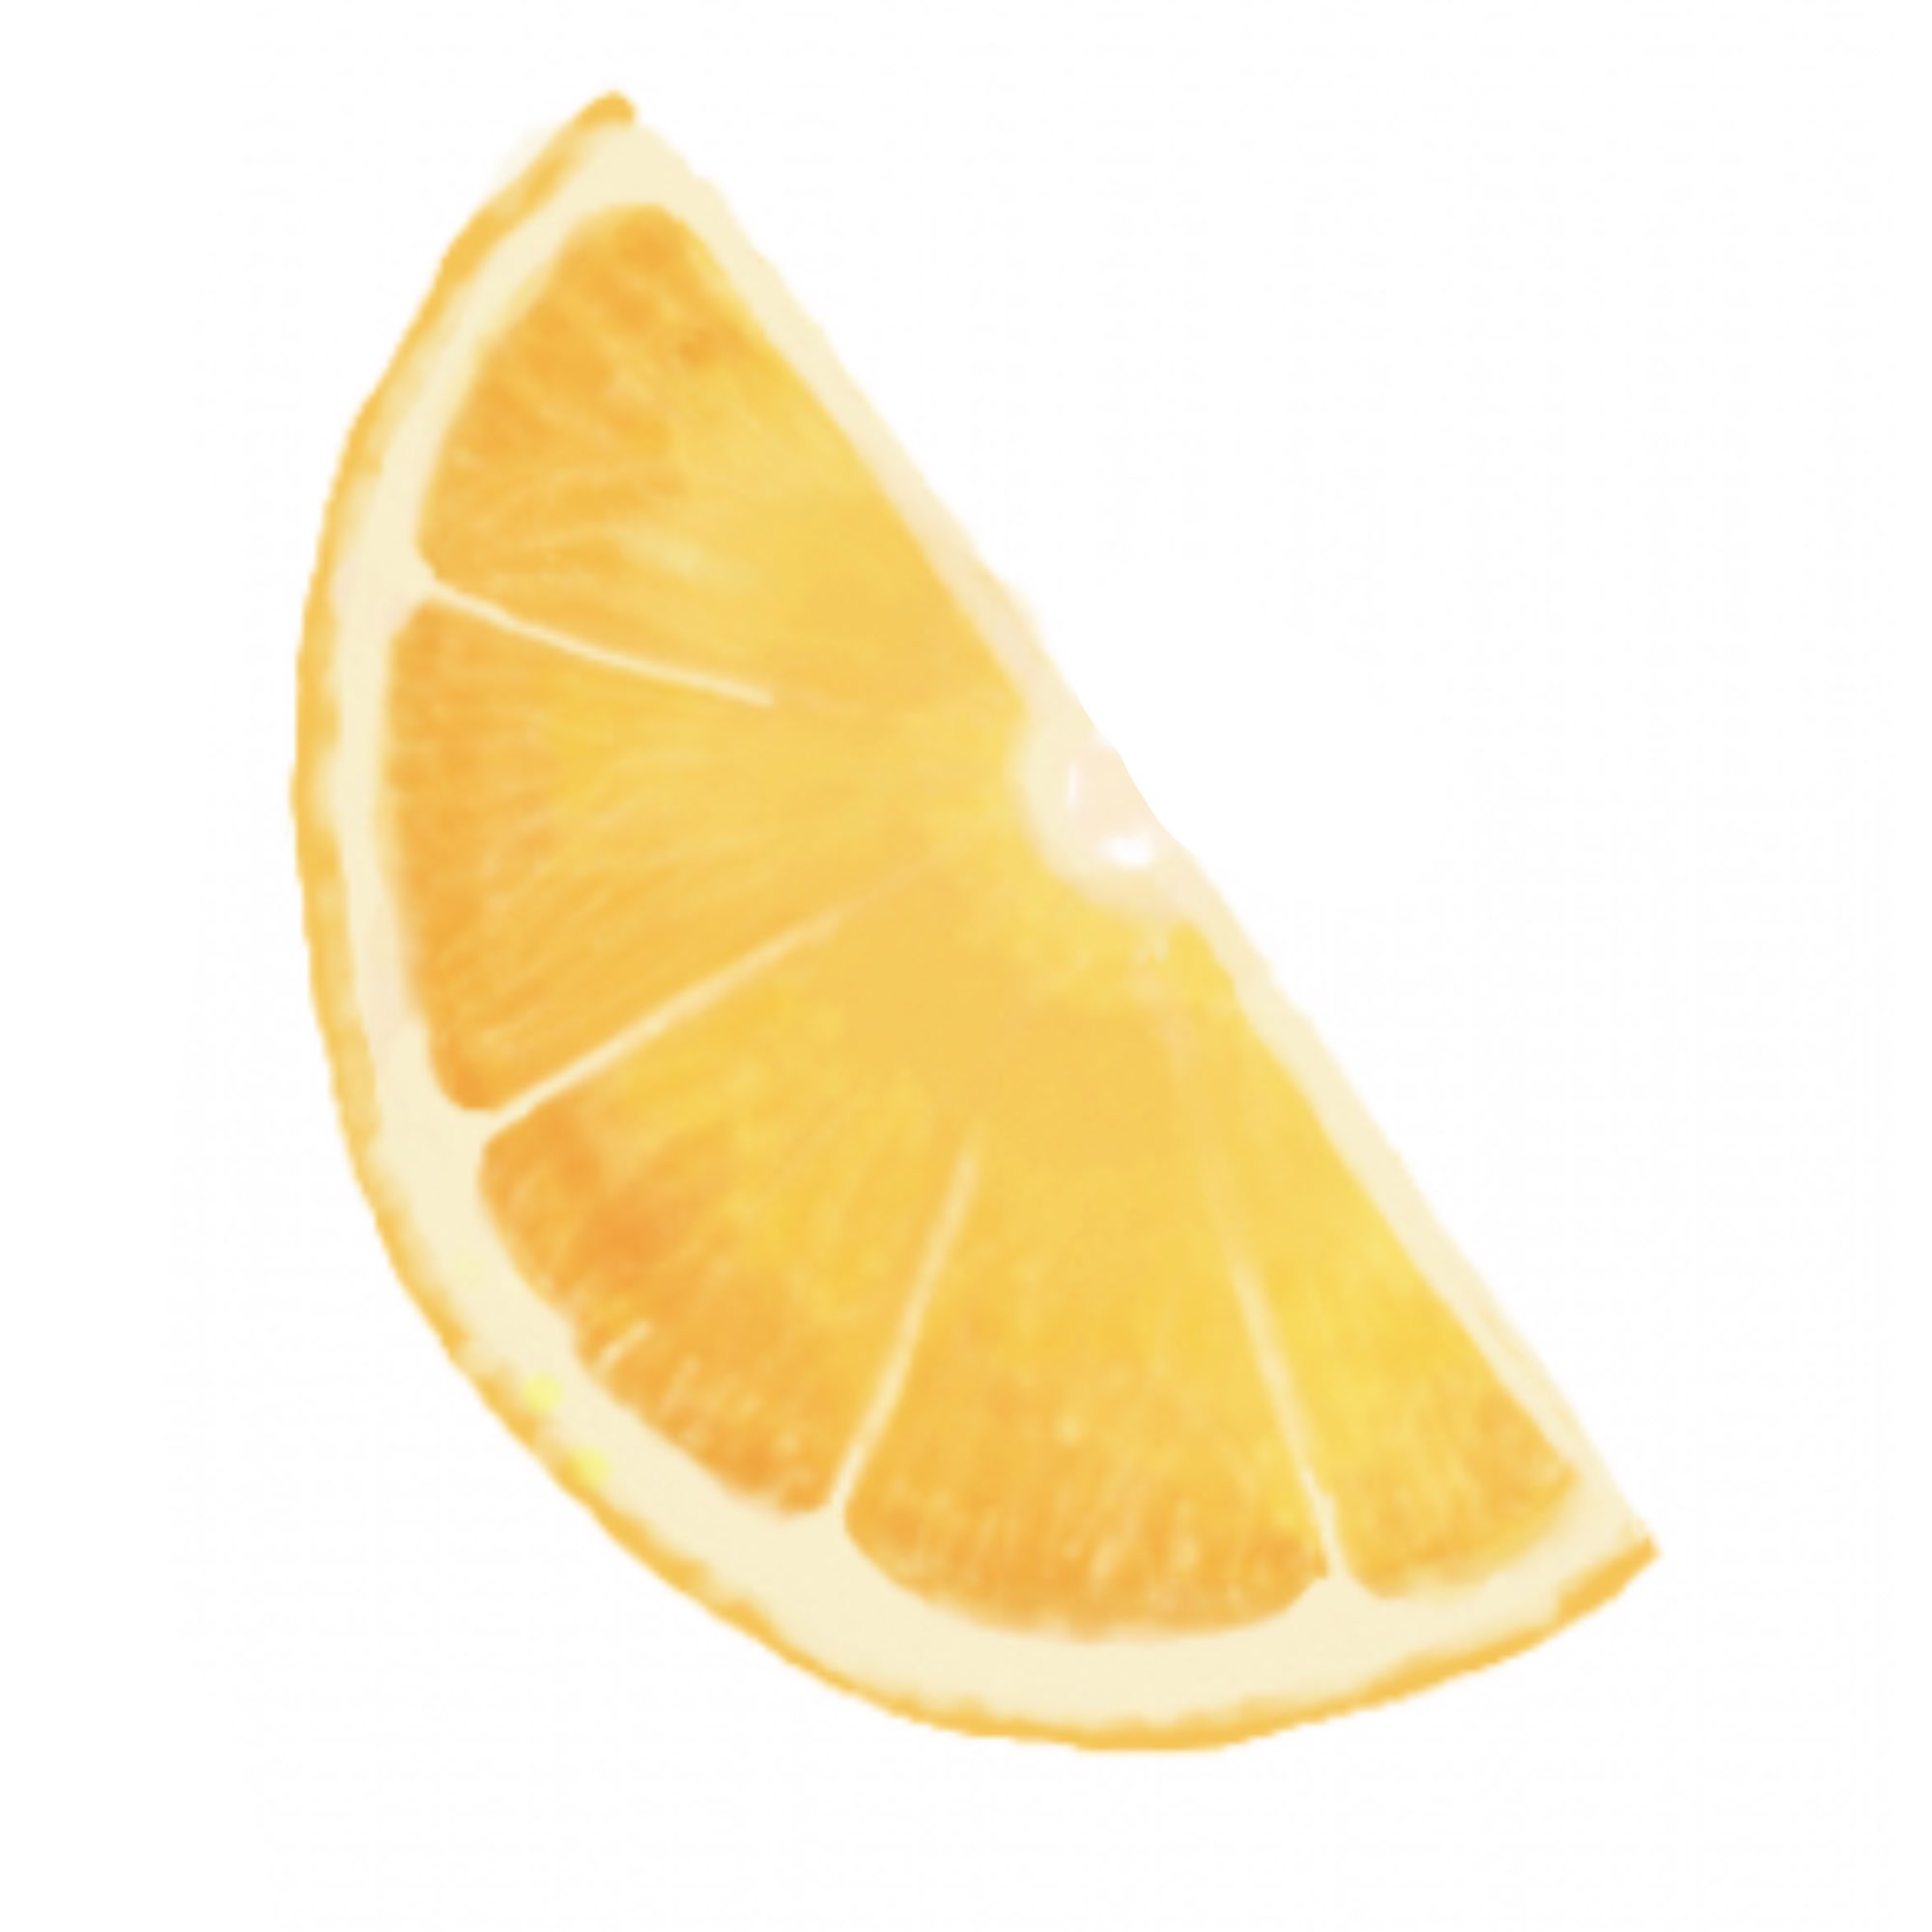 ももちー Magical Drawで描いたオレンジの断面図やっぱり 果物系は難しいですね 本当 イラスト Magicaldraw オレンジ T Co Xo3iwkcdbf Twitter